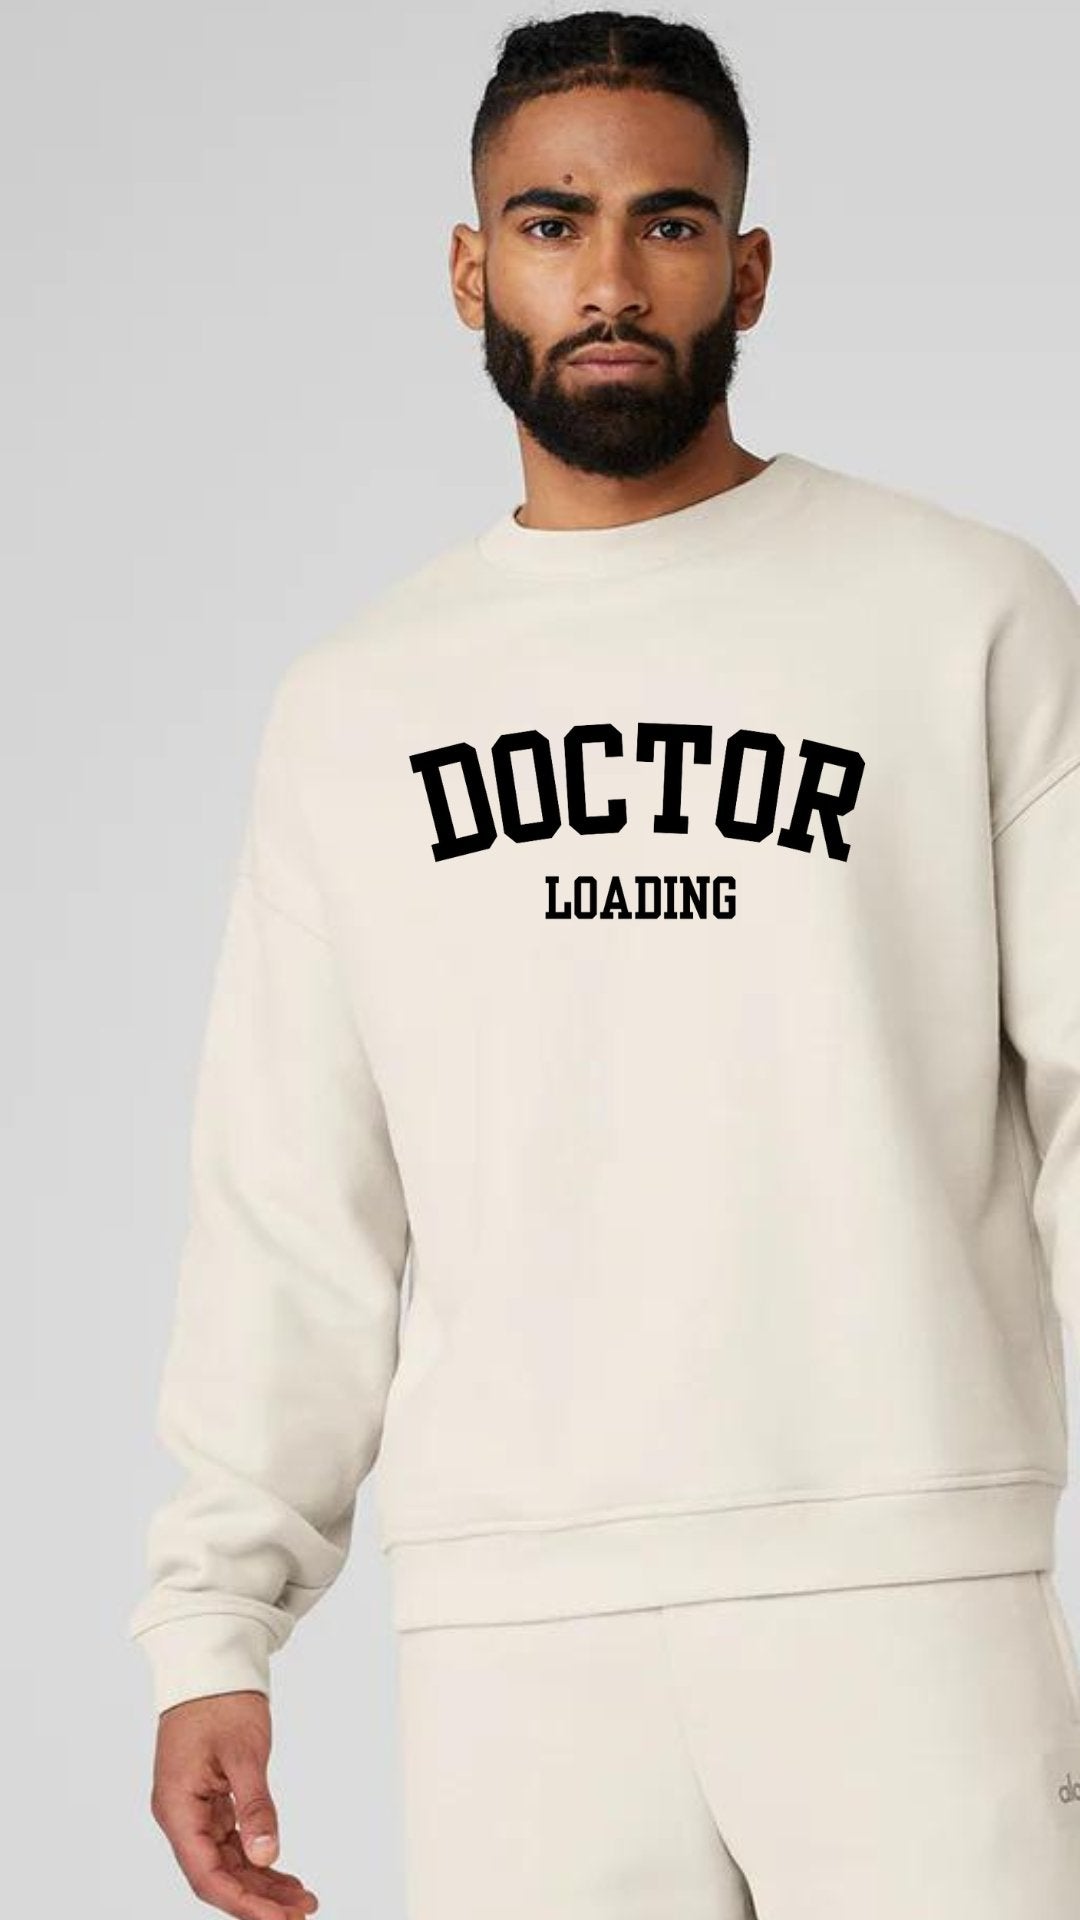 "Doctor Loading" Luxury Unisex Sweatshirt - The Woman Doctor